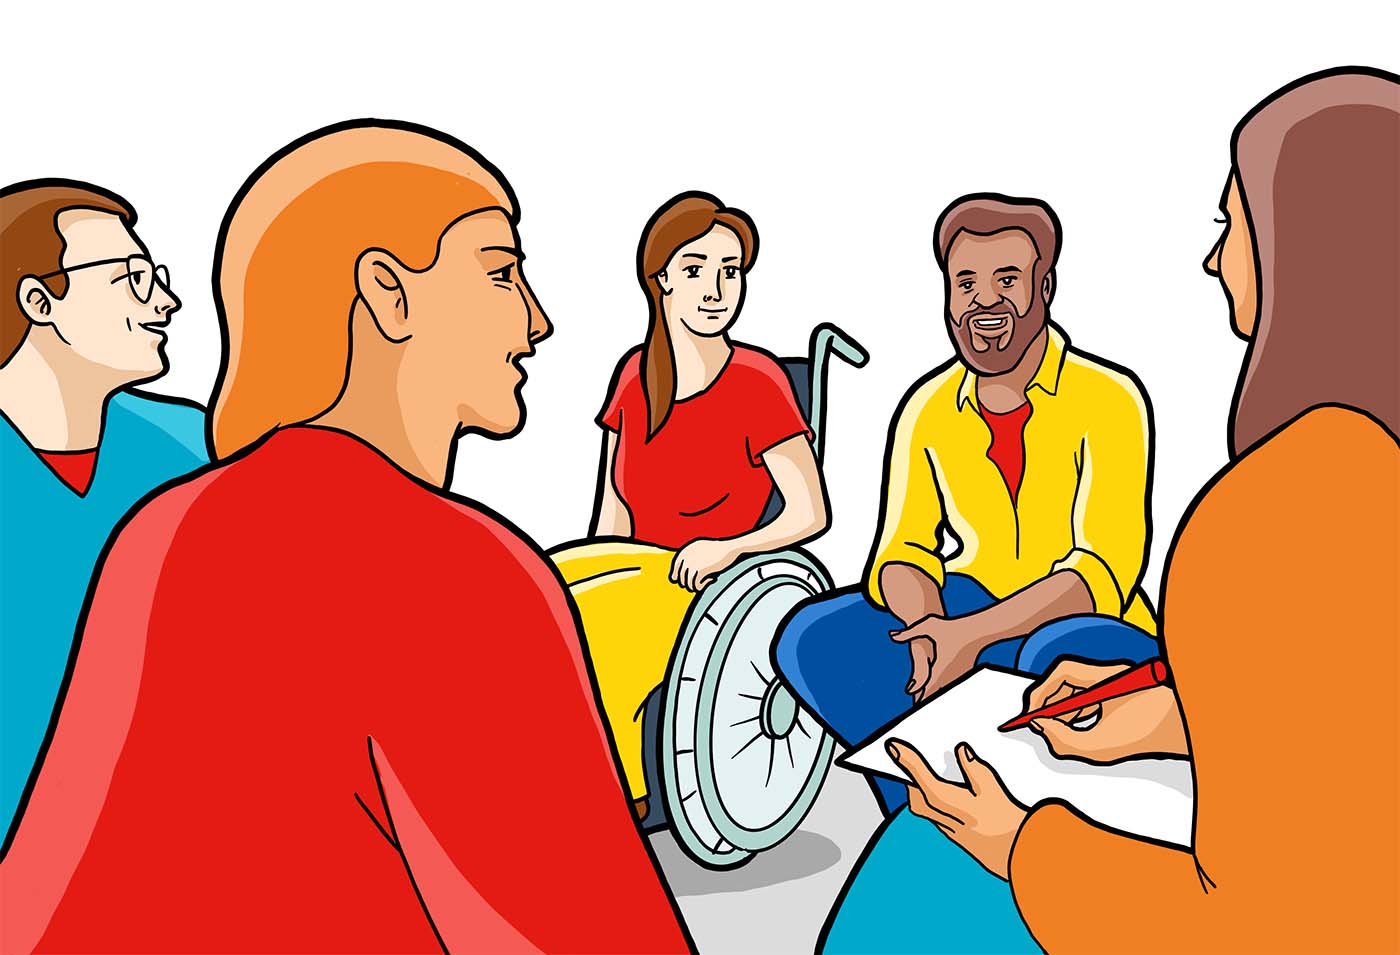 Eine Illustration von 5 Menschen mit bunten Kleidern in einem Gesprächskreis. Ein Mensch sitzt in einem Rollstuhl. Ein Mensch trägt ein Kopftuch und hält Zettel und Stift, um Notizen zu machen.